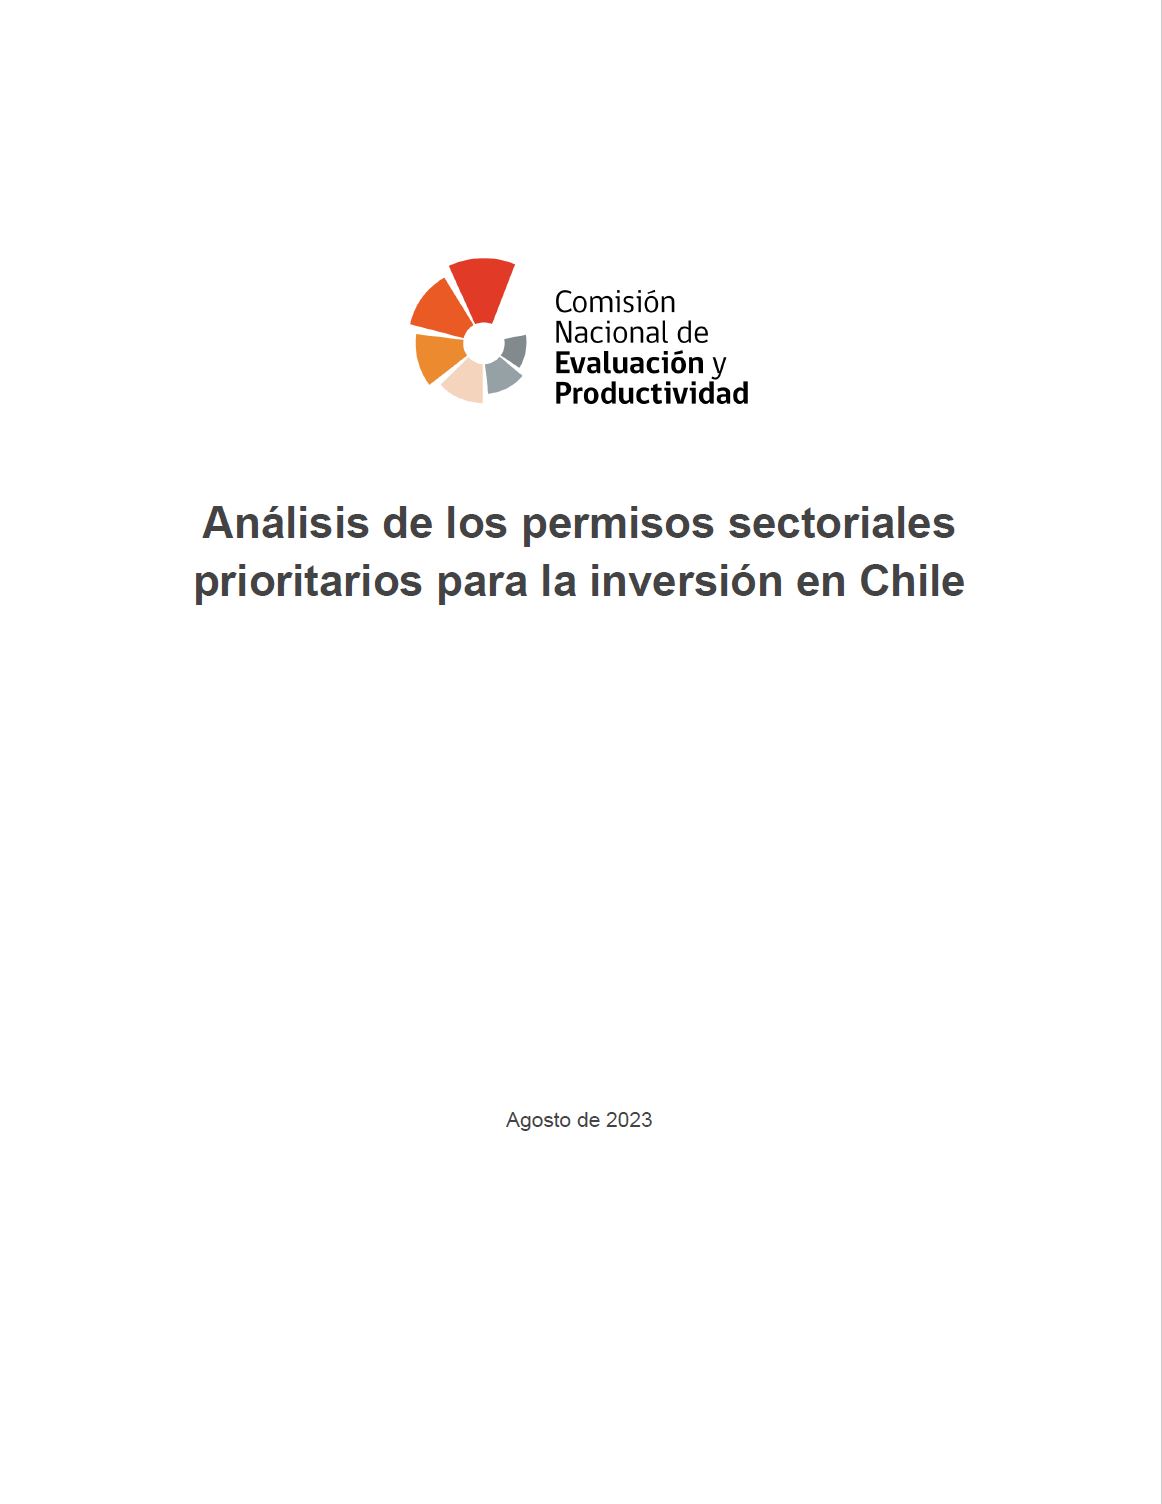 Acceso directo a los números publicados en la revista Análisis de los permisos sectoriales prioritarios para la inversión en Chile